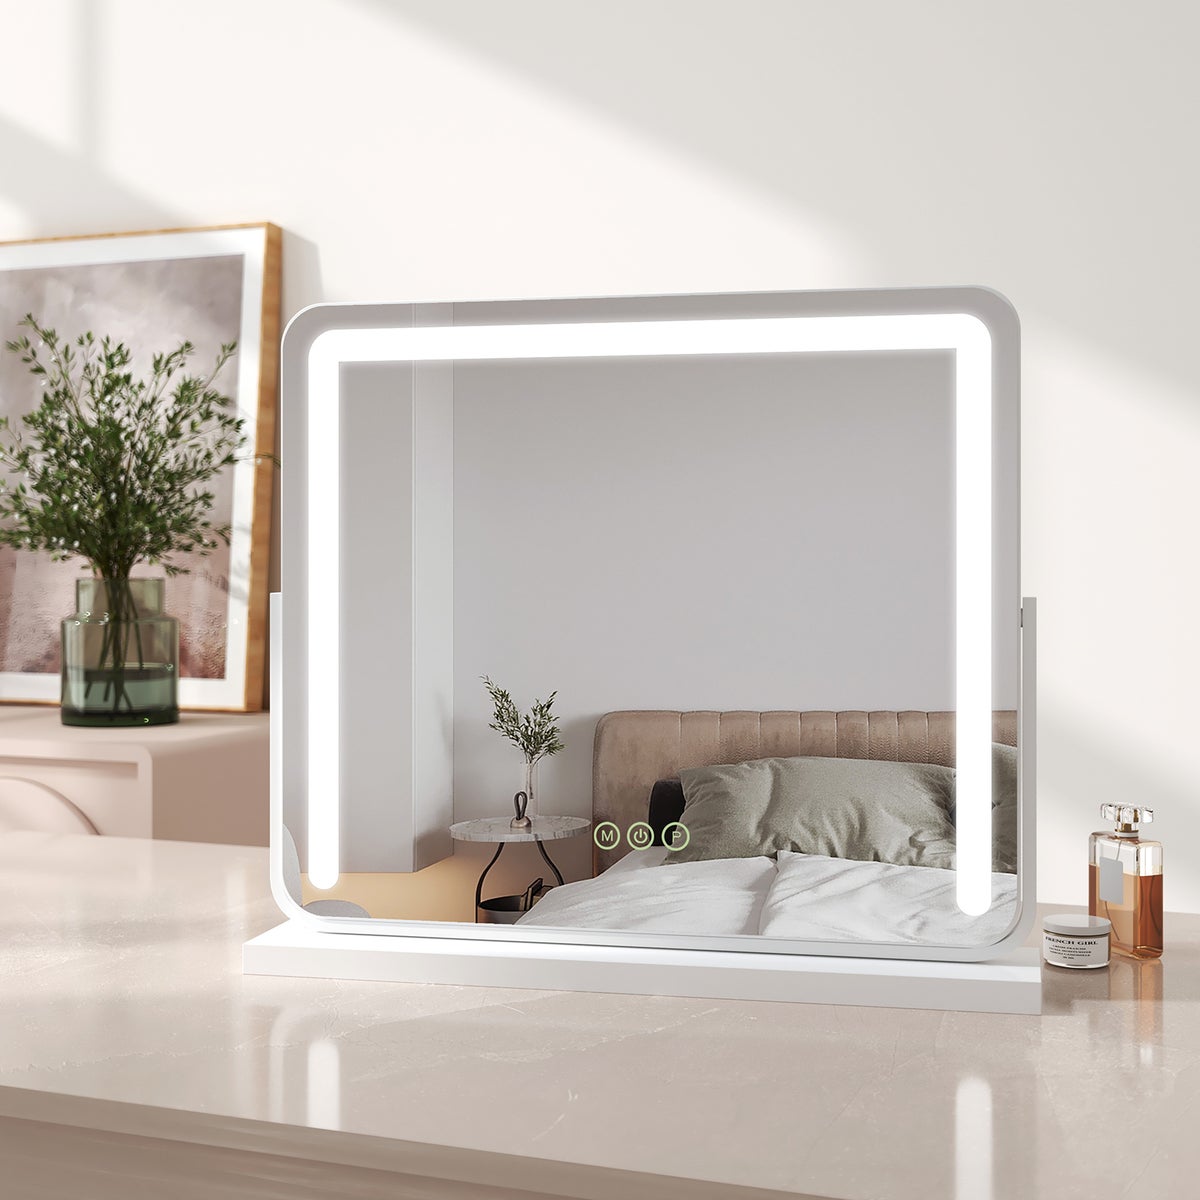 EMKE Schminkspiegel mit Beleuchtung LED Kosmetikspiegel Drehbar Make Up Spiegel mit Touchschalter, 3 Lichtfarben Dimmbar und Memory-Funktion, Weiß, 60x51,6cm